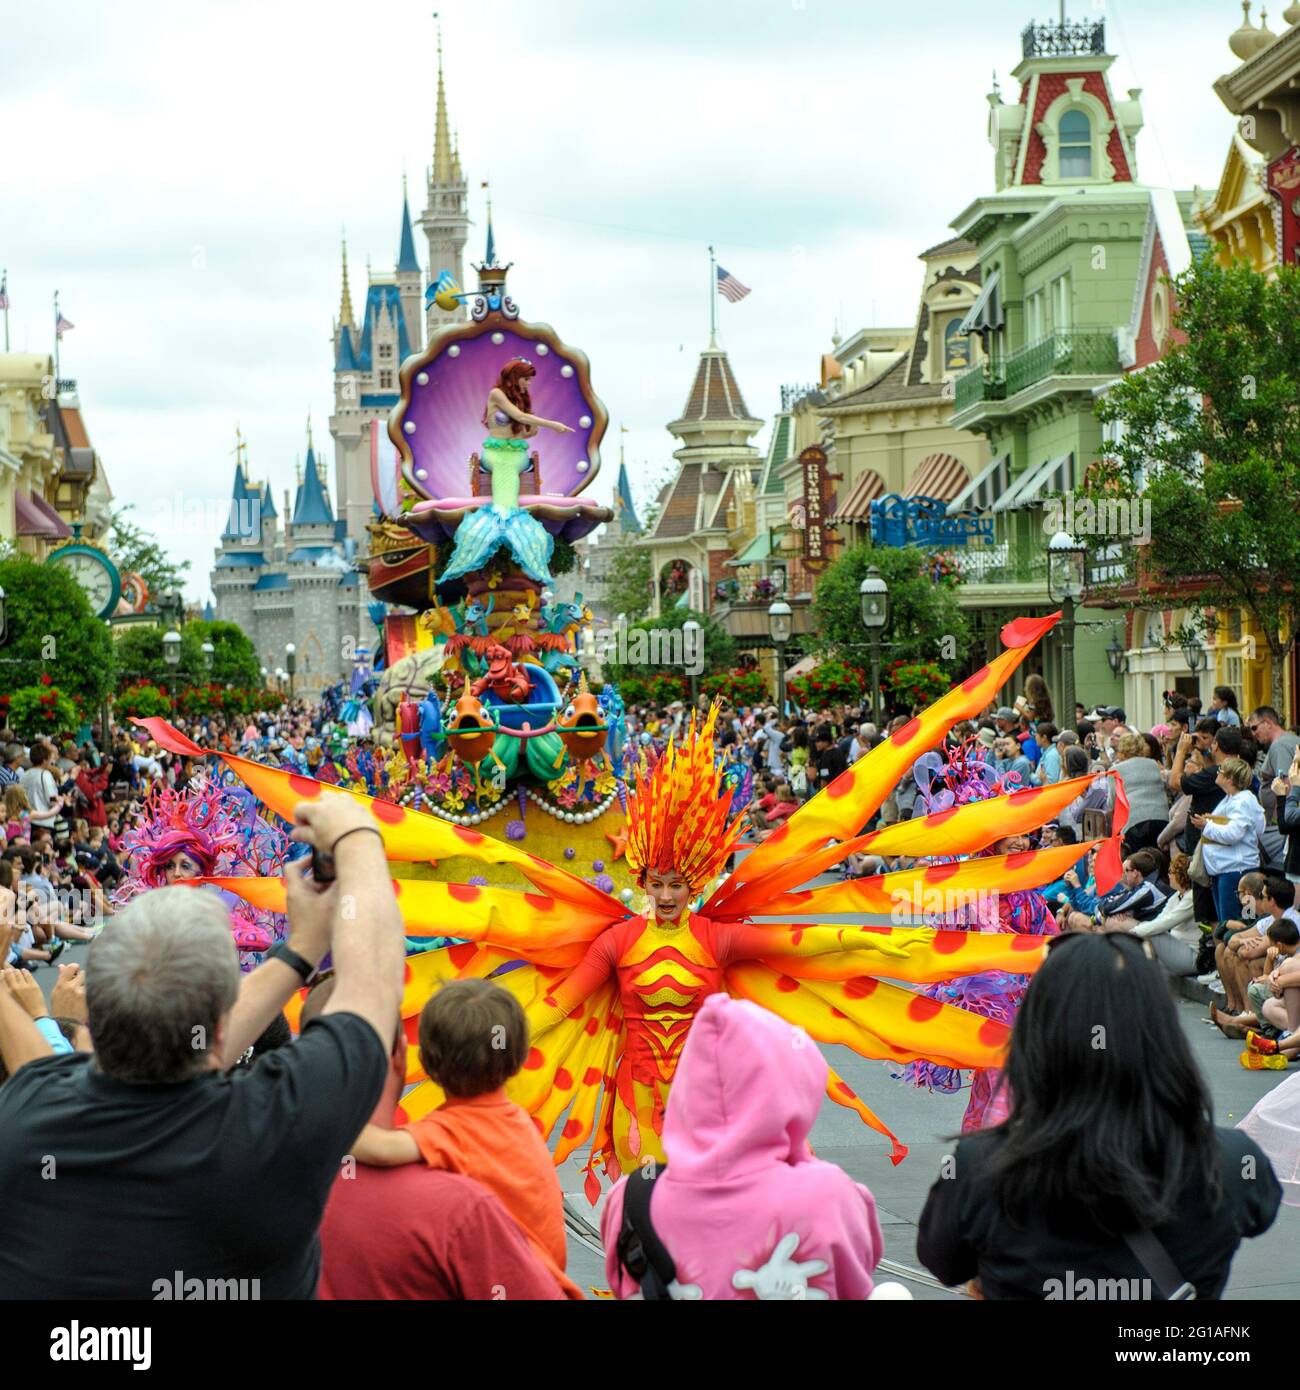 Suonatore vestito arancione e giallo, con il galleggiante Little Mermaid, in Festival of Fantasy Parade, Magic Kingdom Park, Walt Disney World, Orlando, Florida Foto Stock